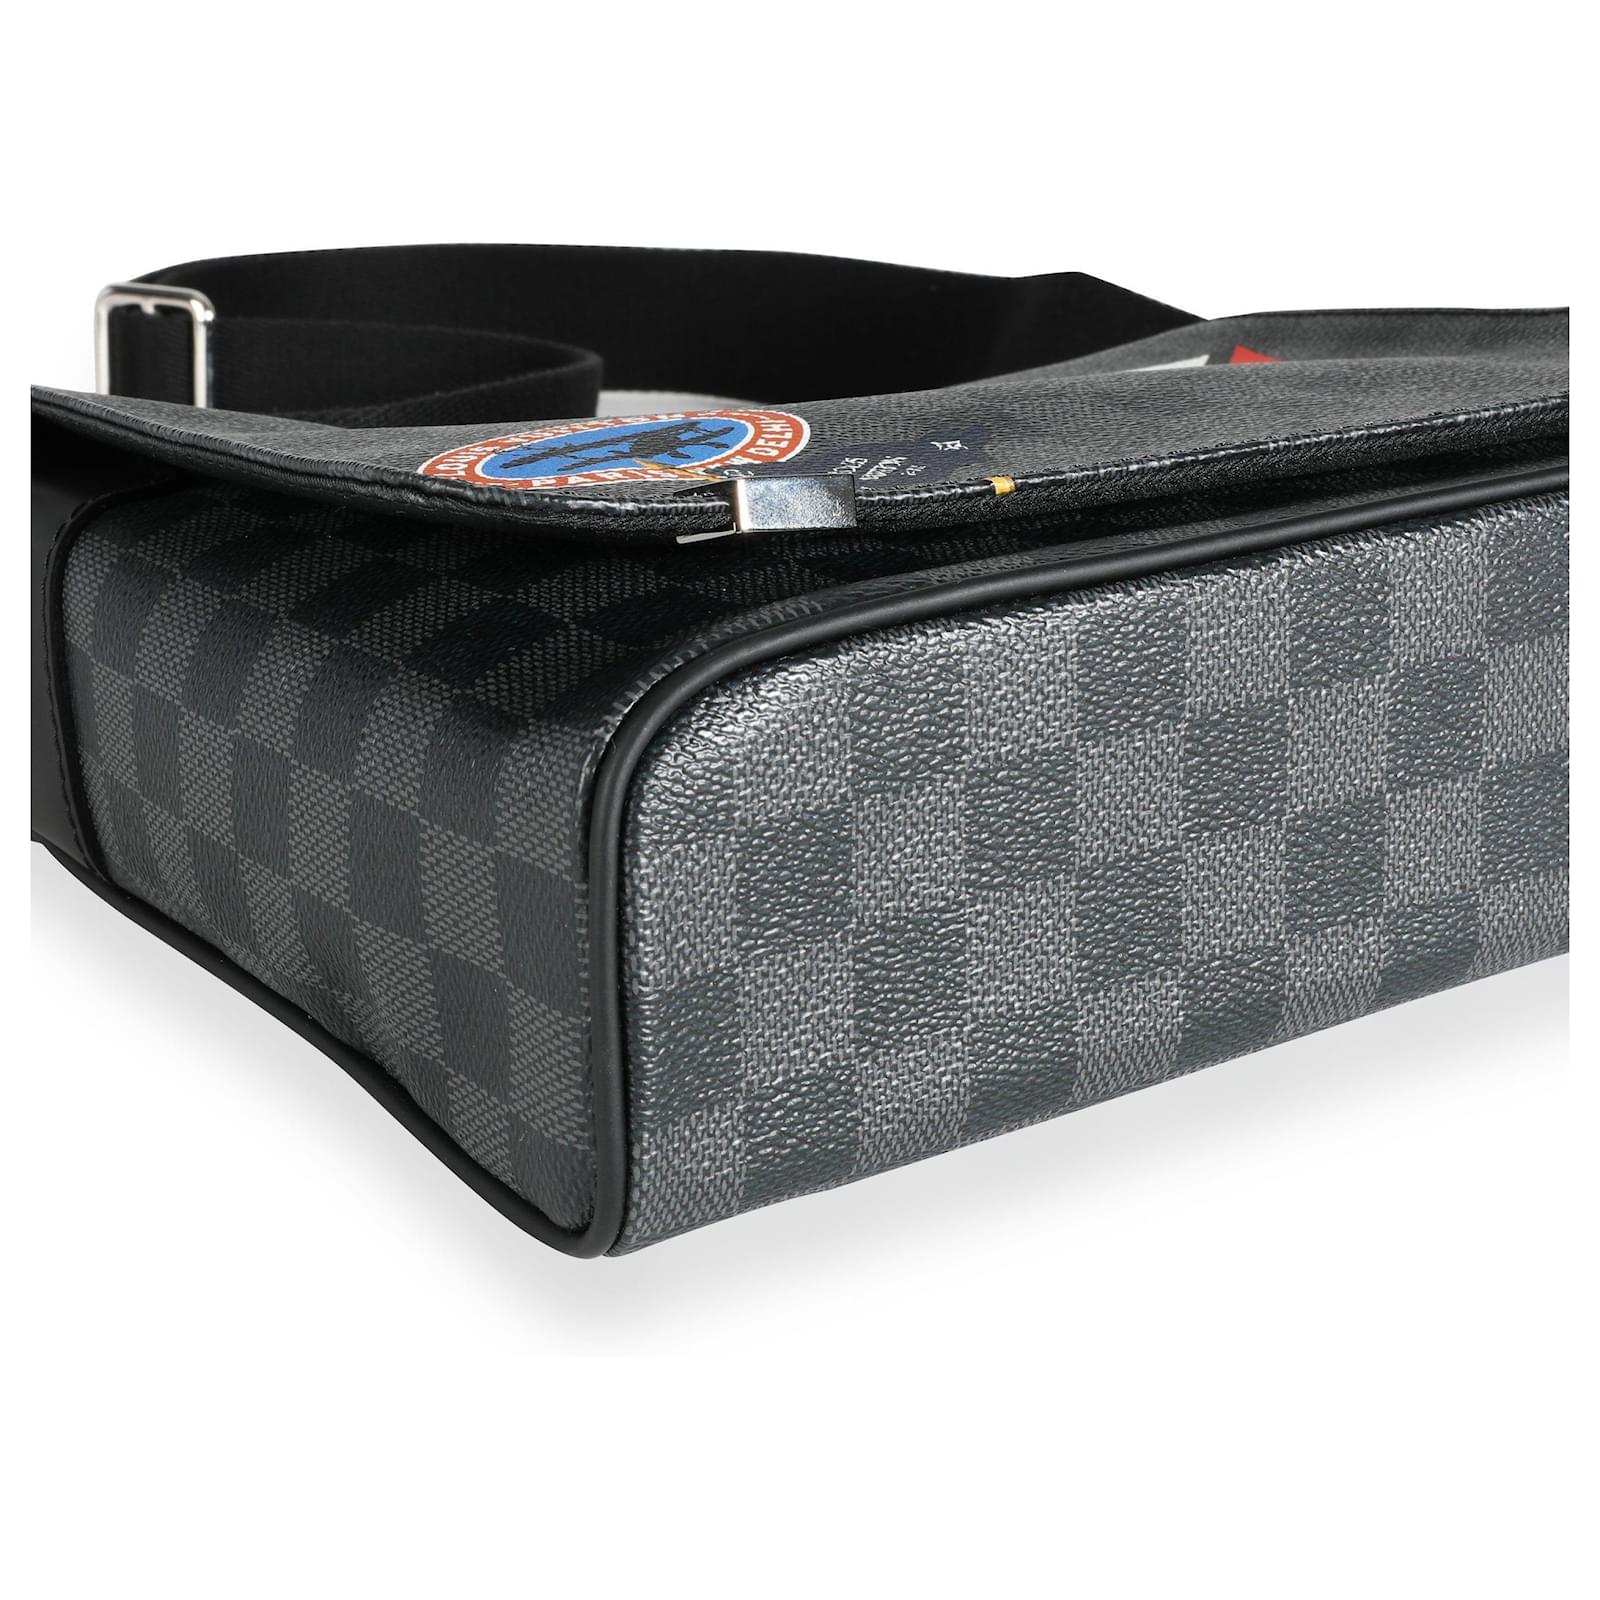 Louis Vuitton District Messenger Bag Limited Edition Damier